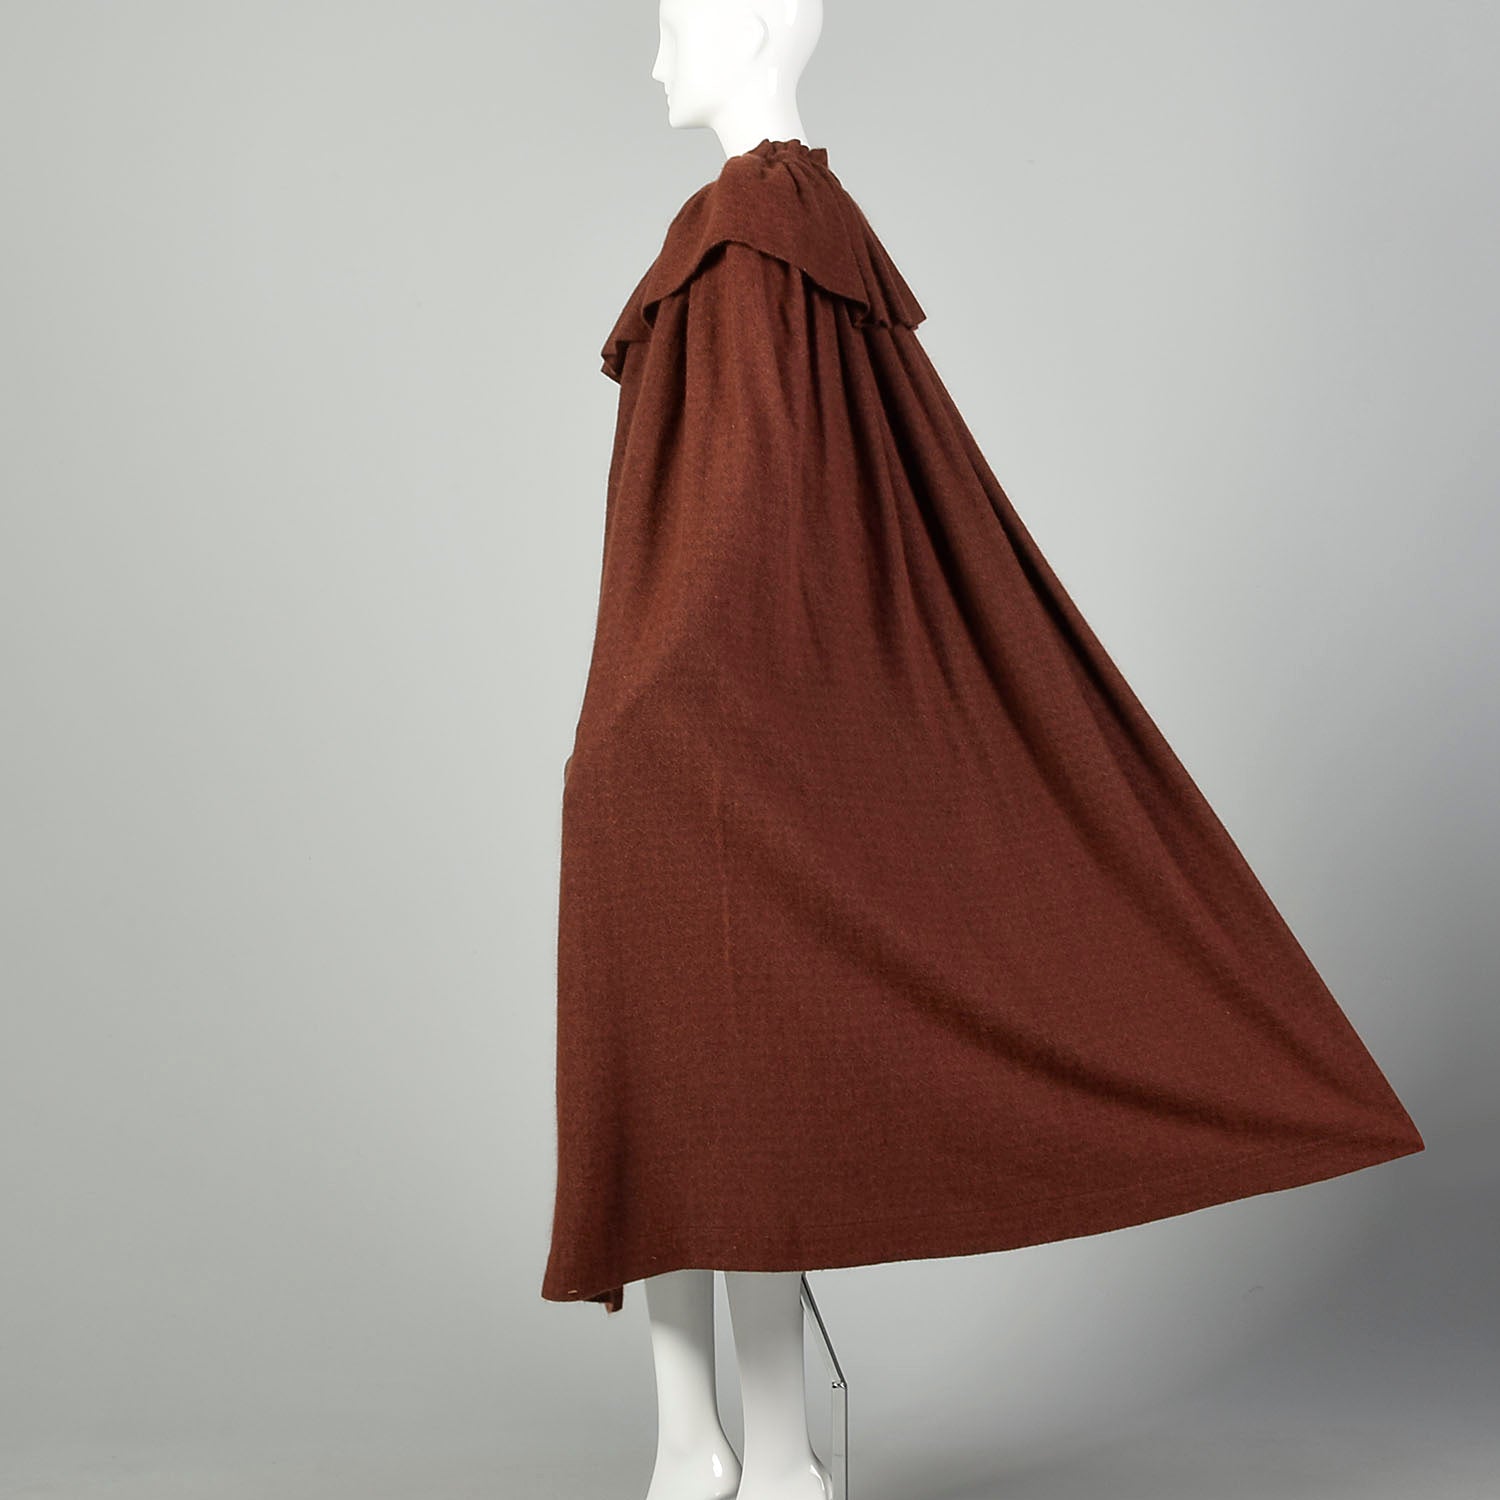 1970s Yves Saint Laurent Rive Gauche Cape Cashmere Angora Knit Soft Autumn Designer Vintage Outerwear